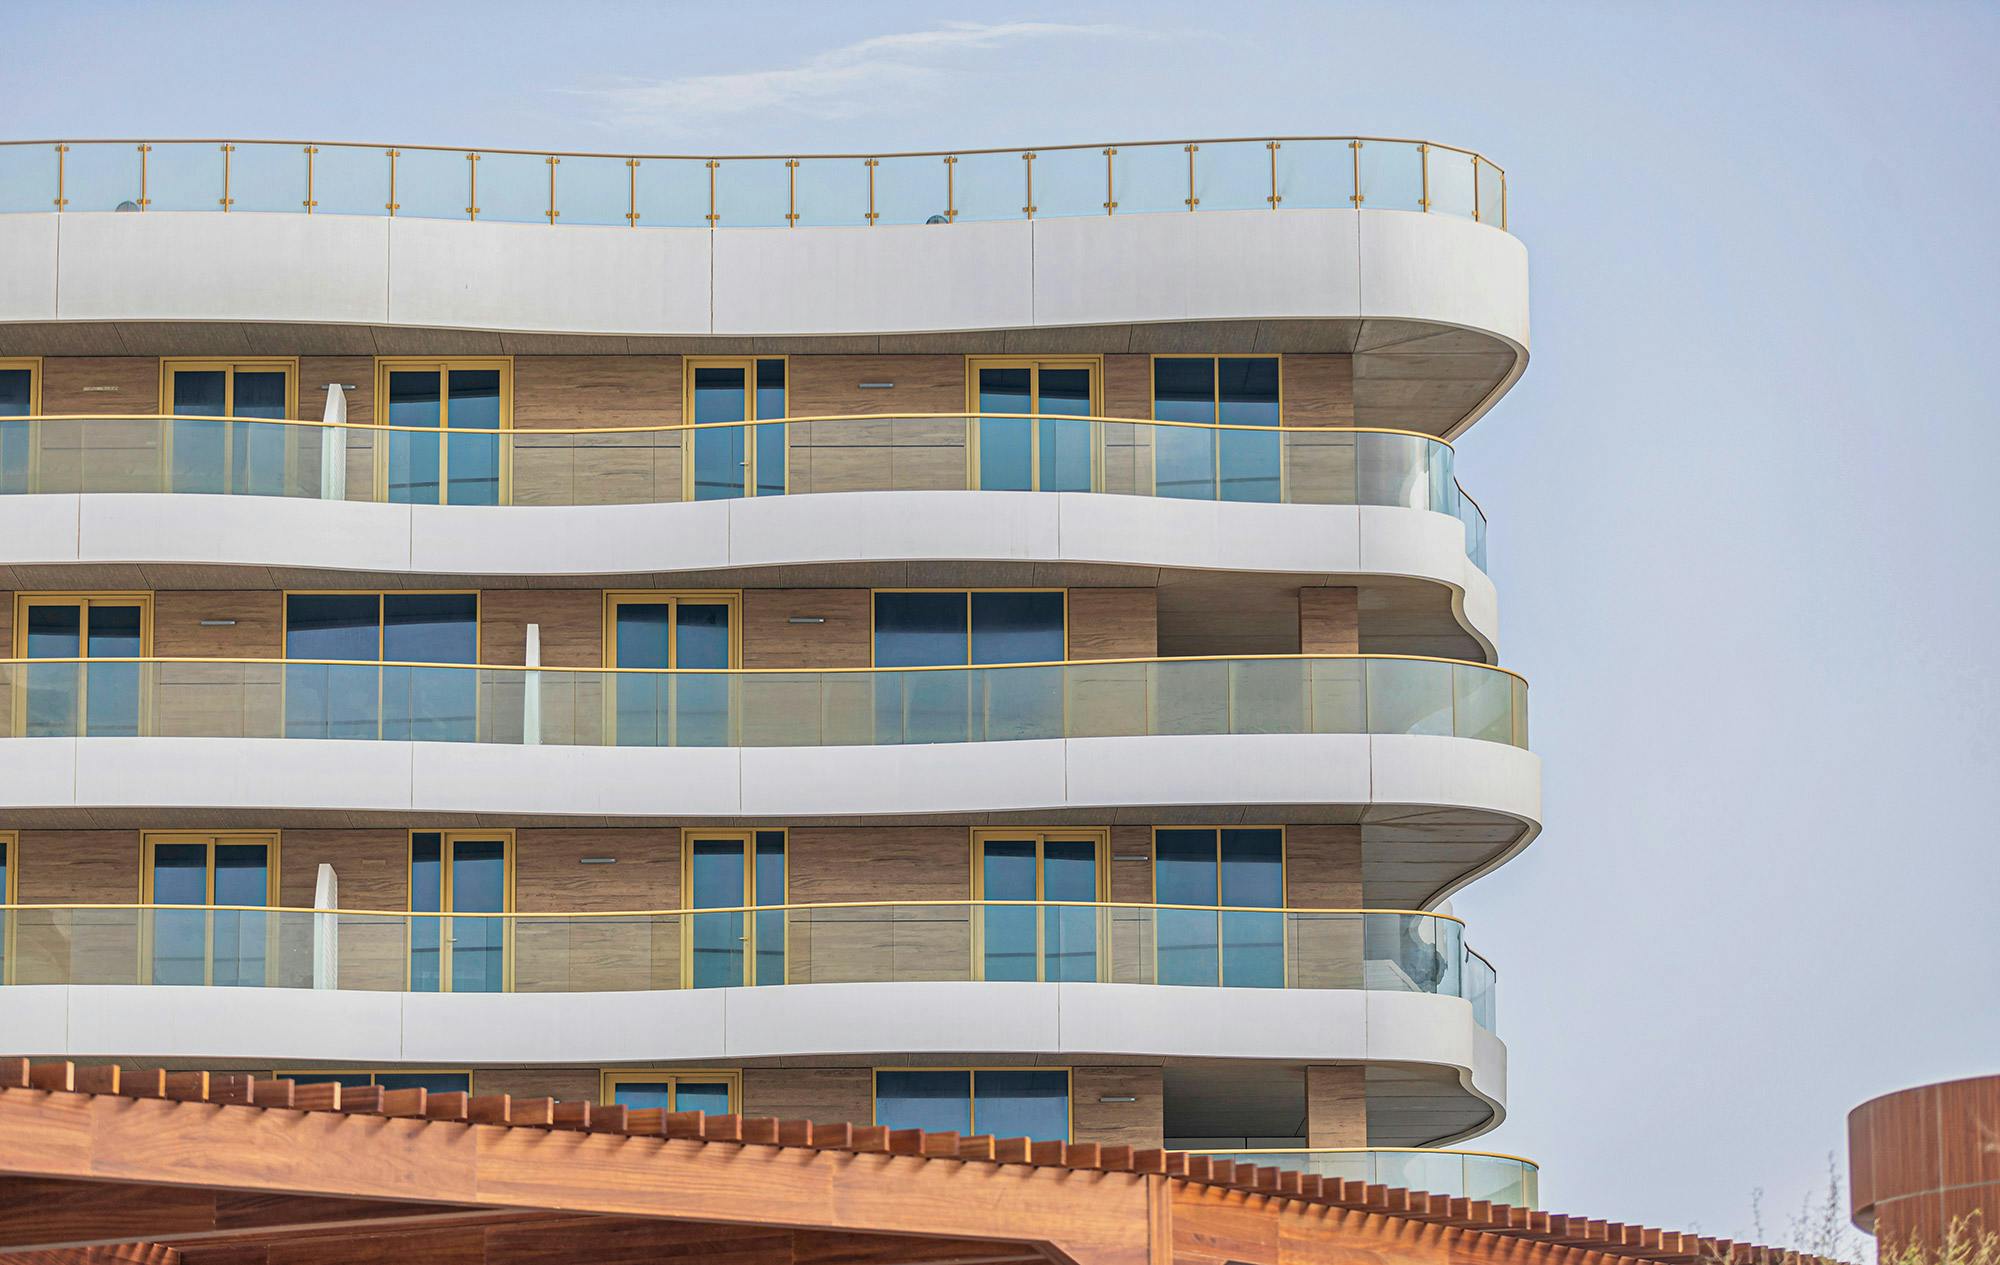 Numero immagine 32 della sezione corrente di {{The largest façade project in the world featuring the Dekton ventilated system }} di Cosentino Italia